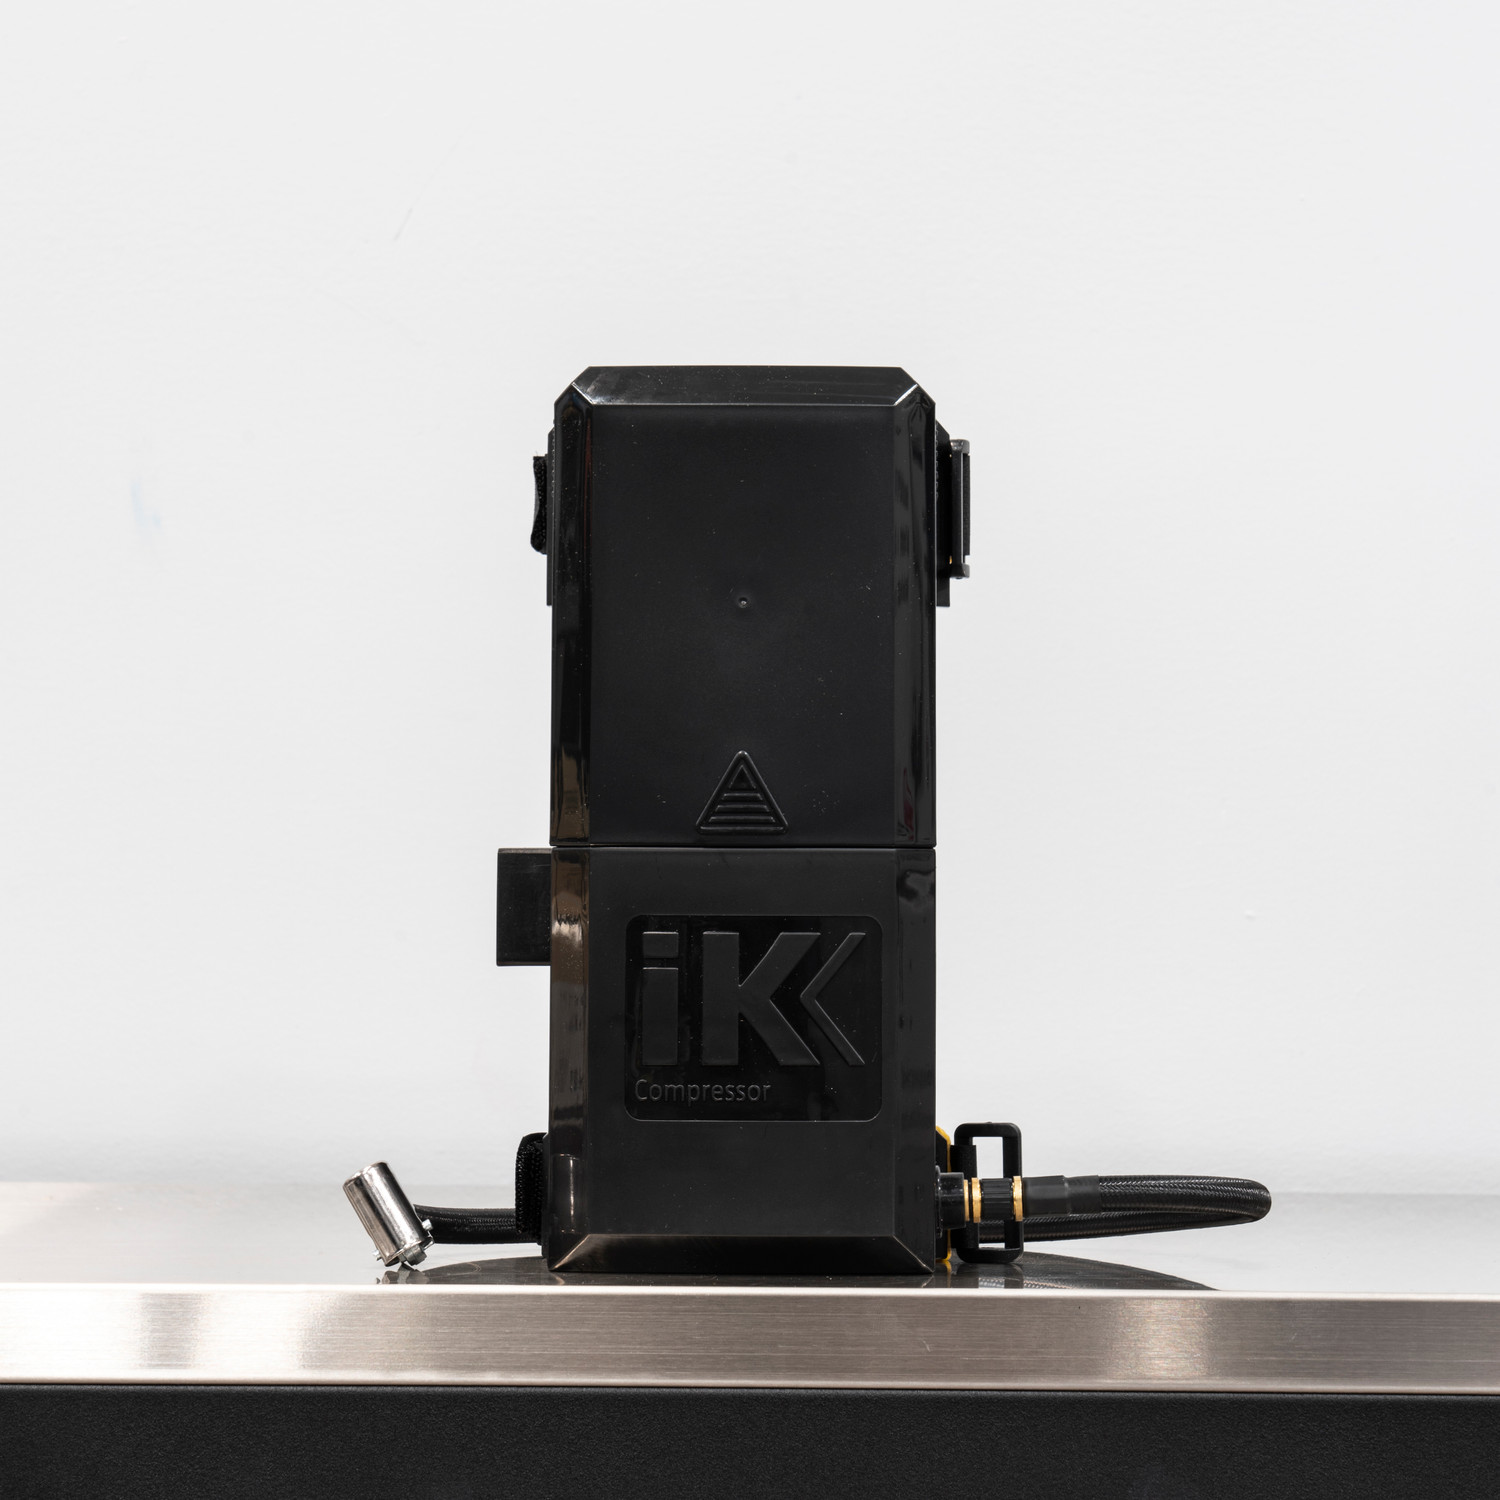 IK e Foam Pro 12, Battery Operated Foam Sprayer